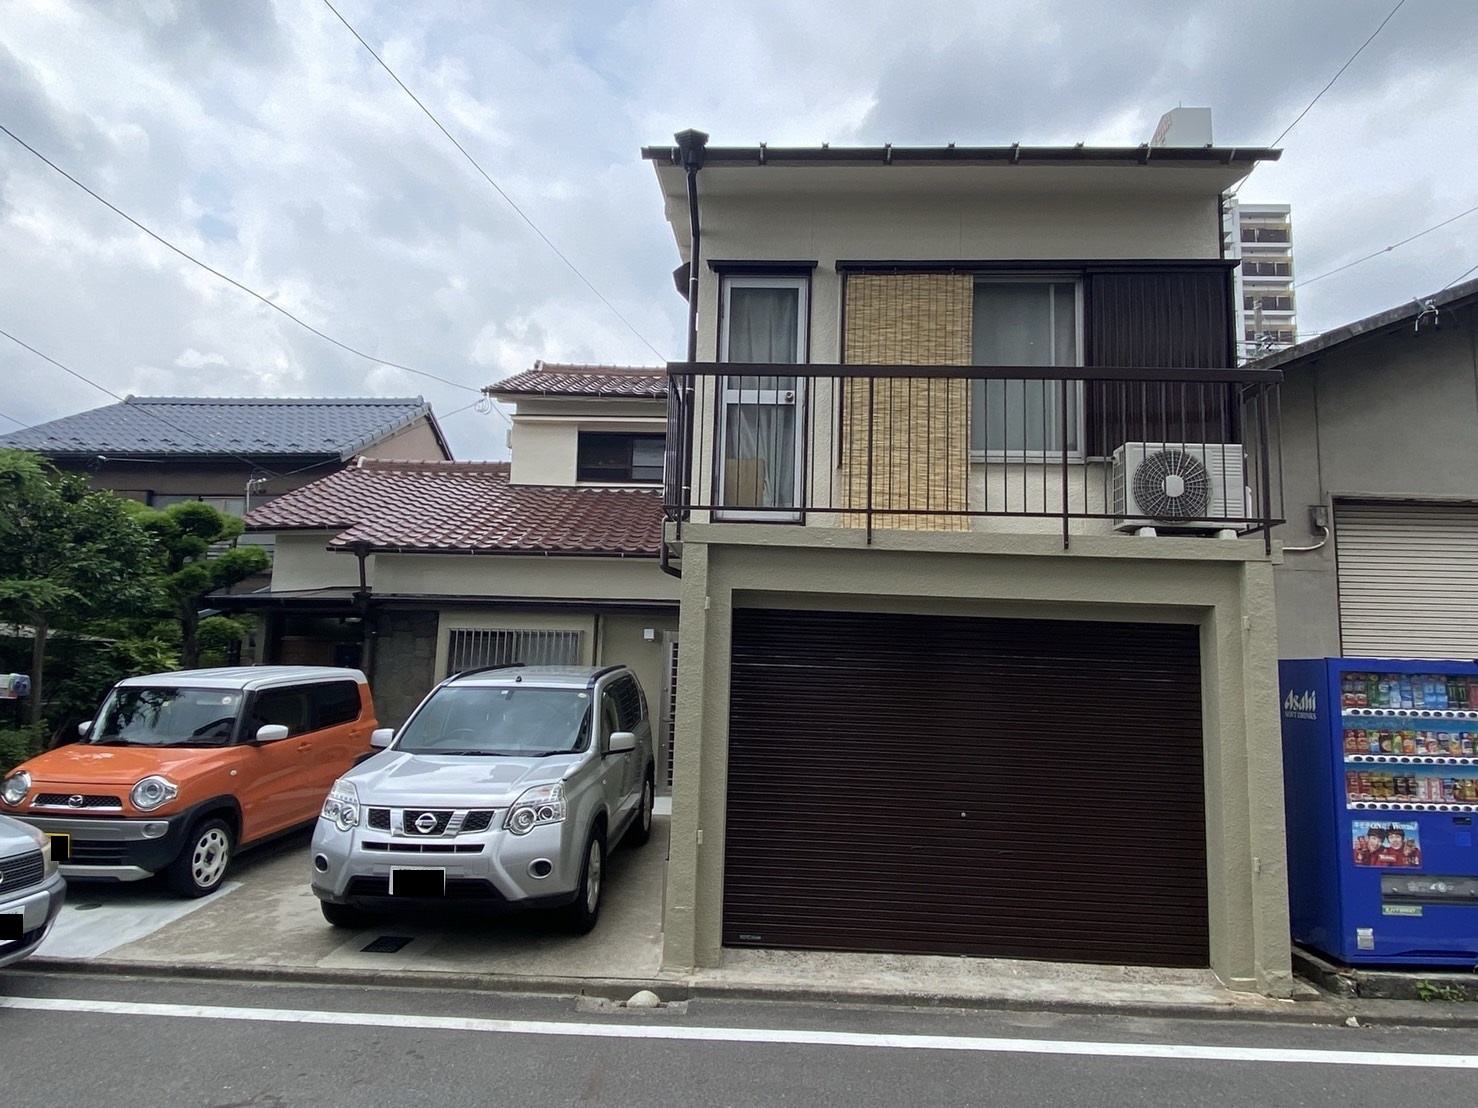 清須市でツートーンカラーで外壁塗装工事と雨樋交換工事、屋根修繕工事を行いました。